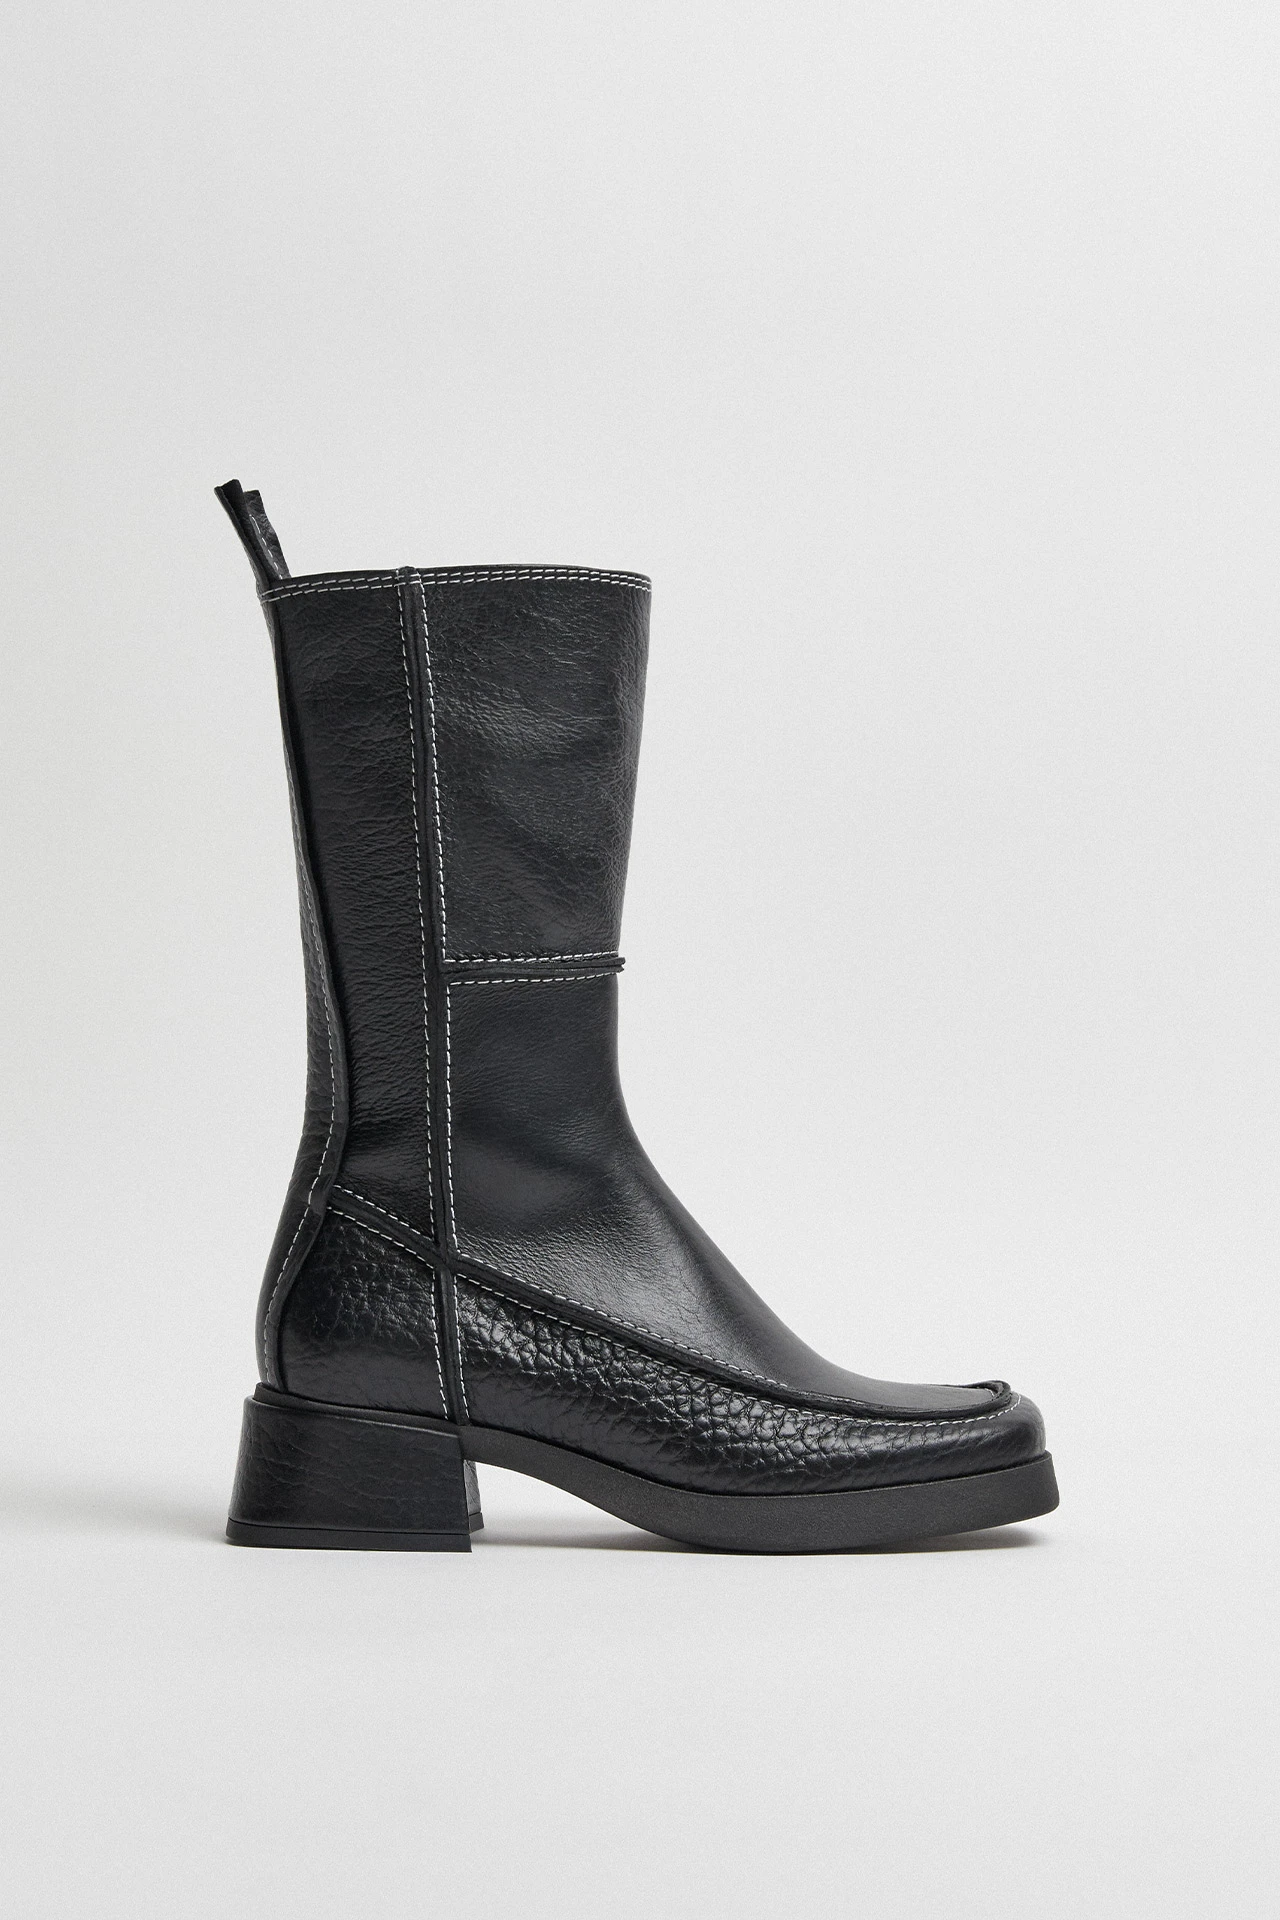 Miista-alzira-black-boots-01